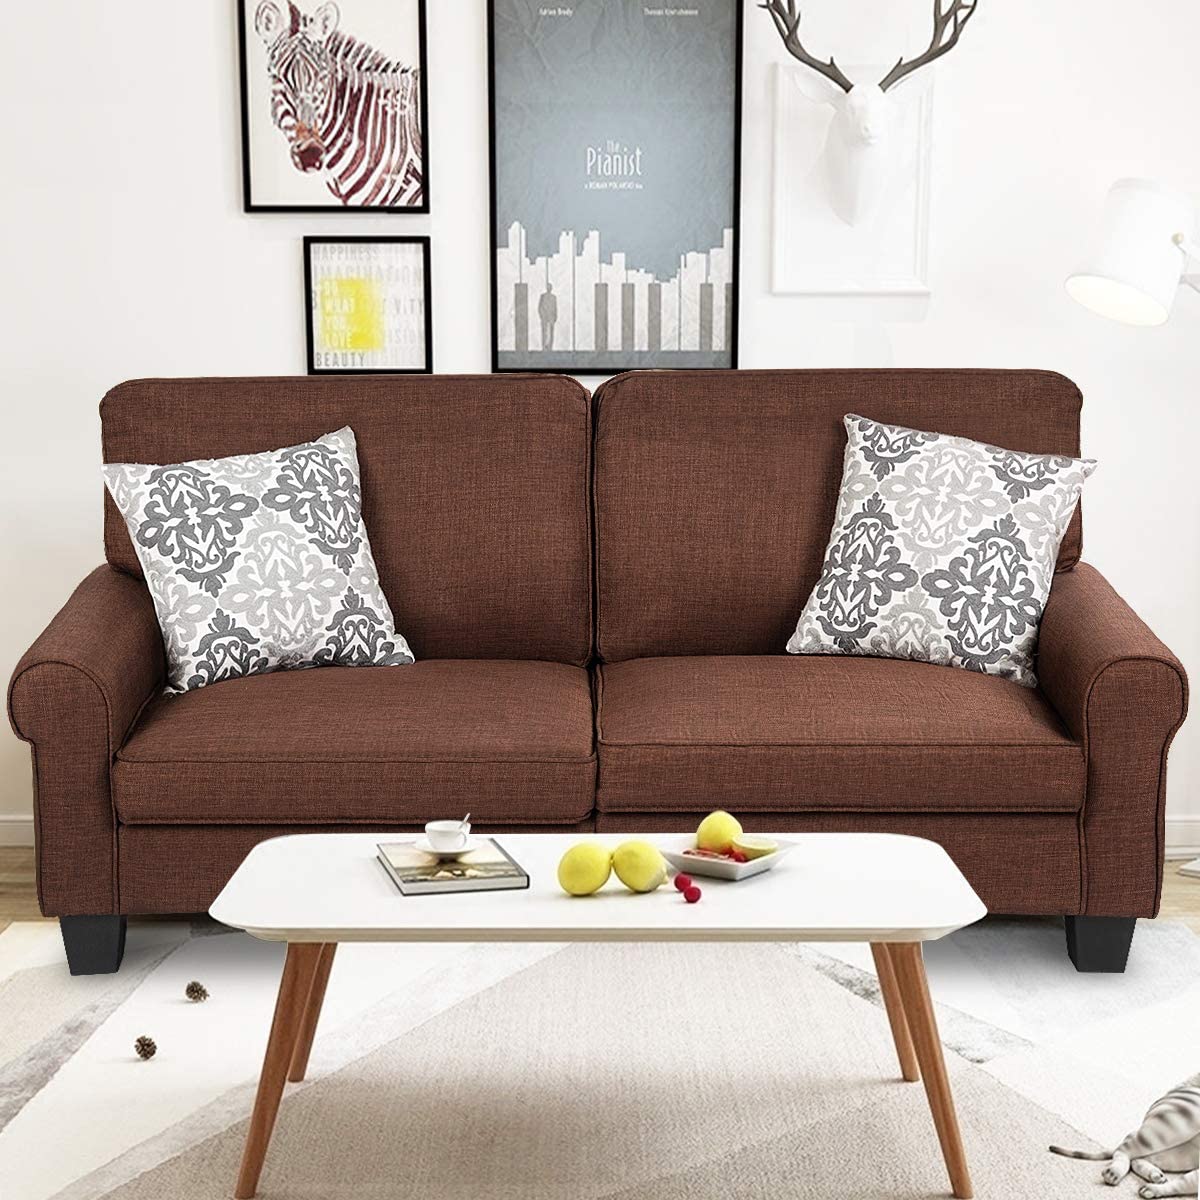 Cách làm sạch và bảo dưỡng bọc ghế sofa tốt